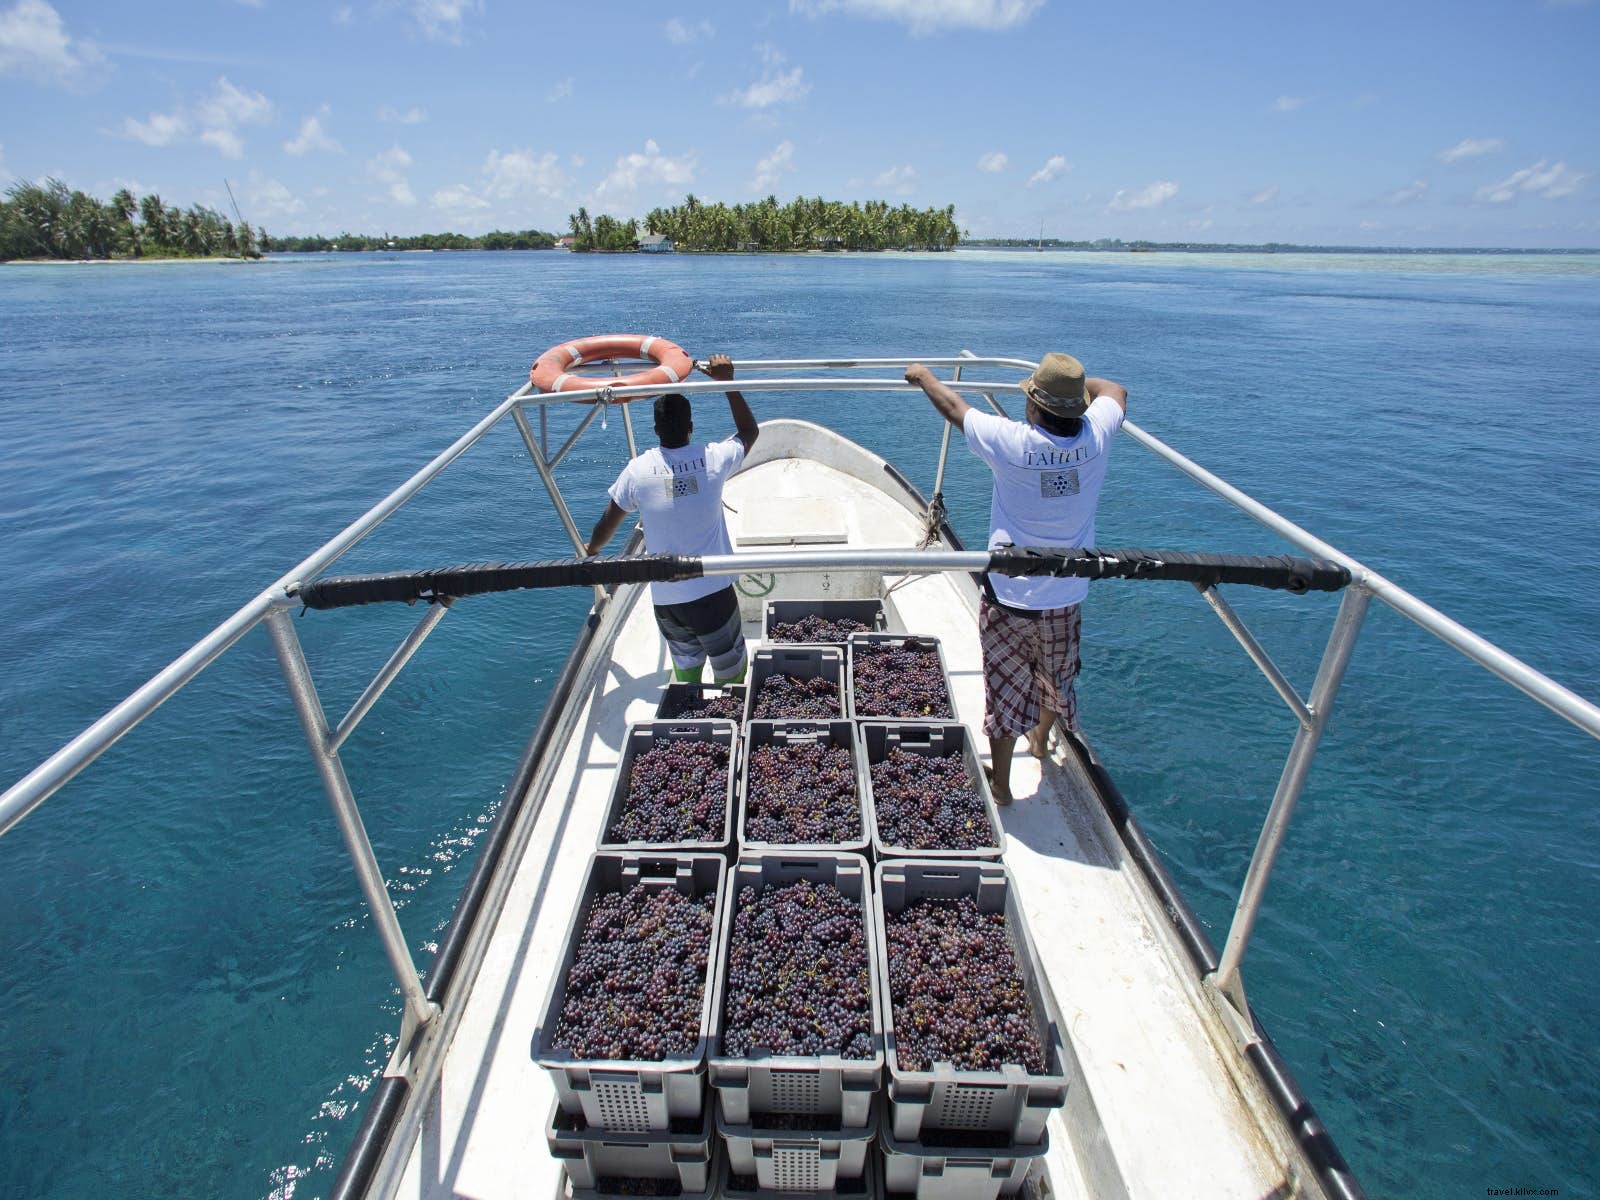 Oito ilhas embriagadas:ilhas inesperadas por onde os produtores de vinho vagaram 